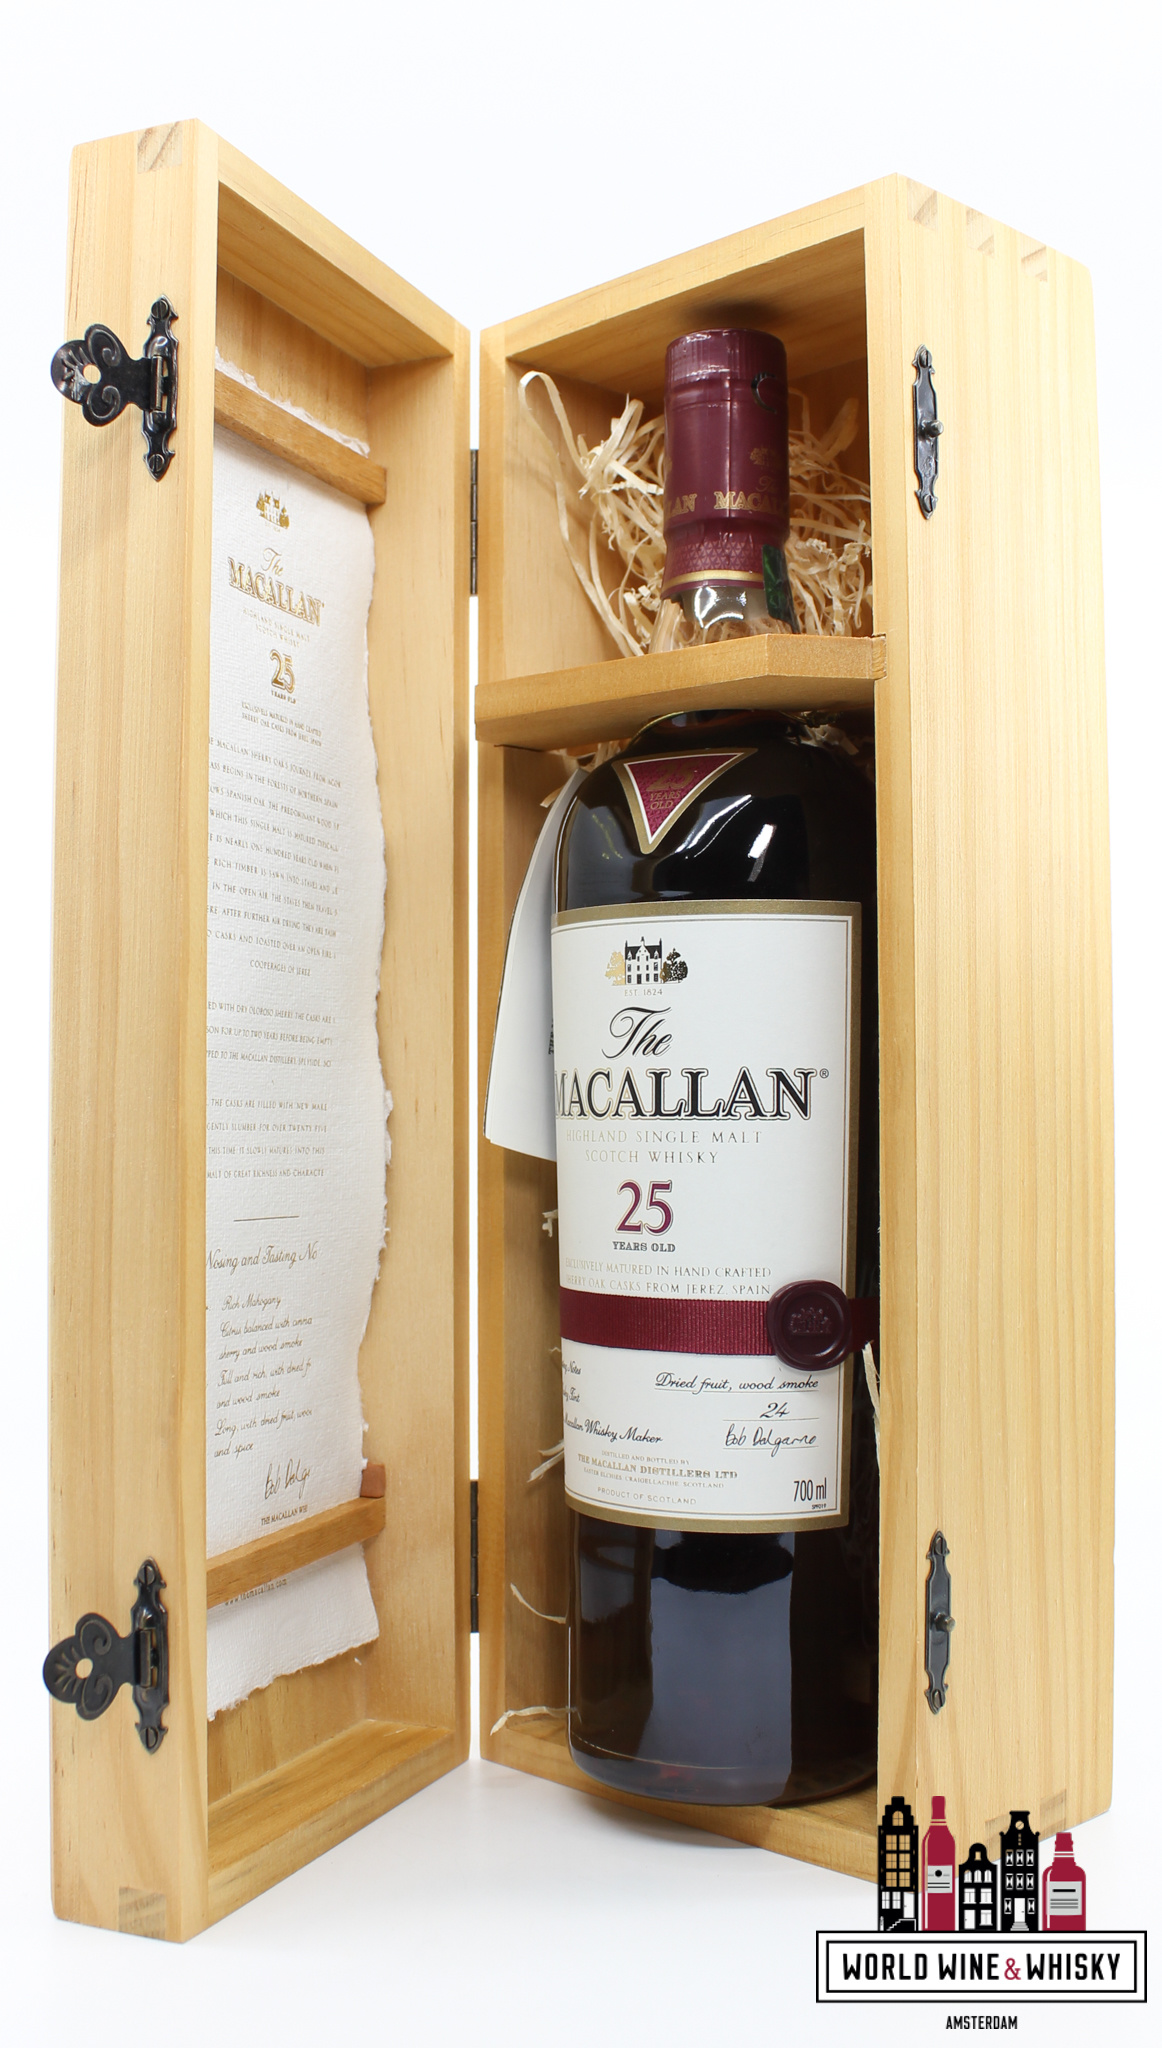 Macallan Macallan 25 Years Old 2011 - Sherry Oak Casks from Jerez 43% (in luxury wooden case)